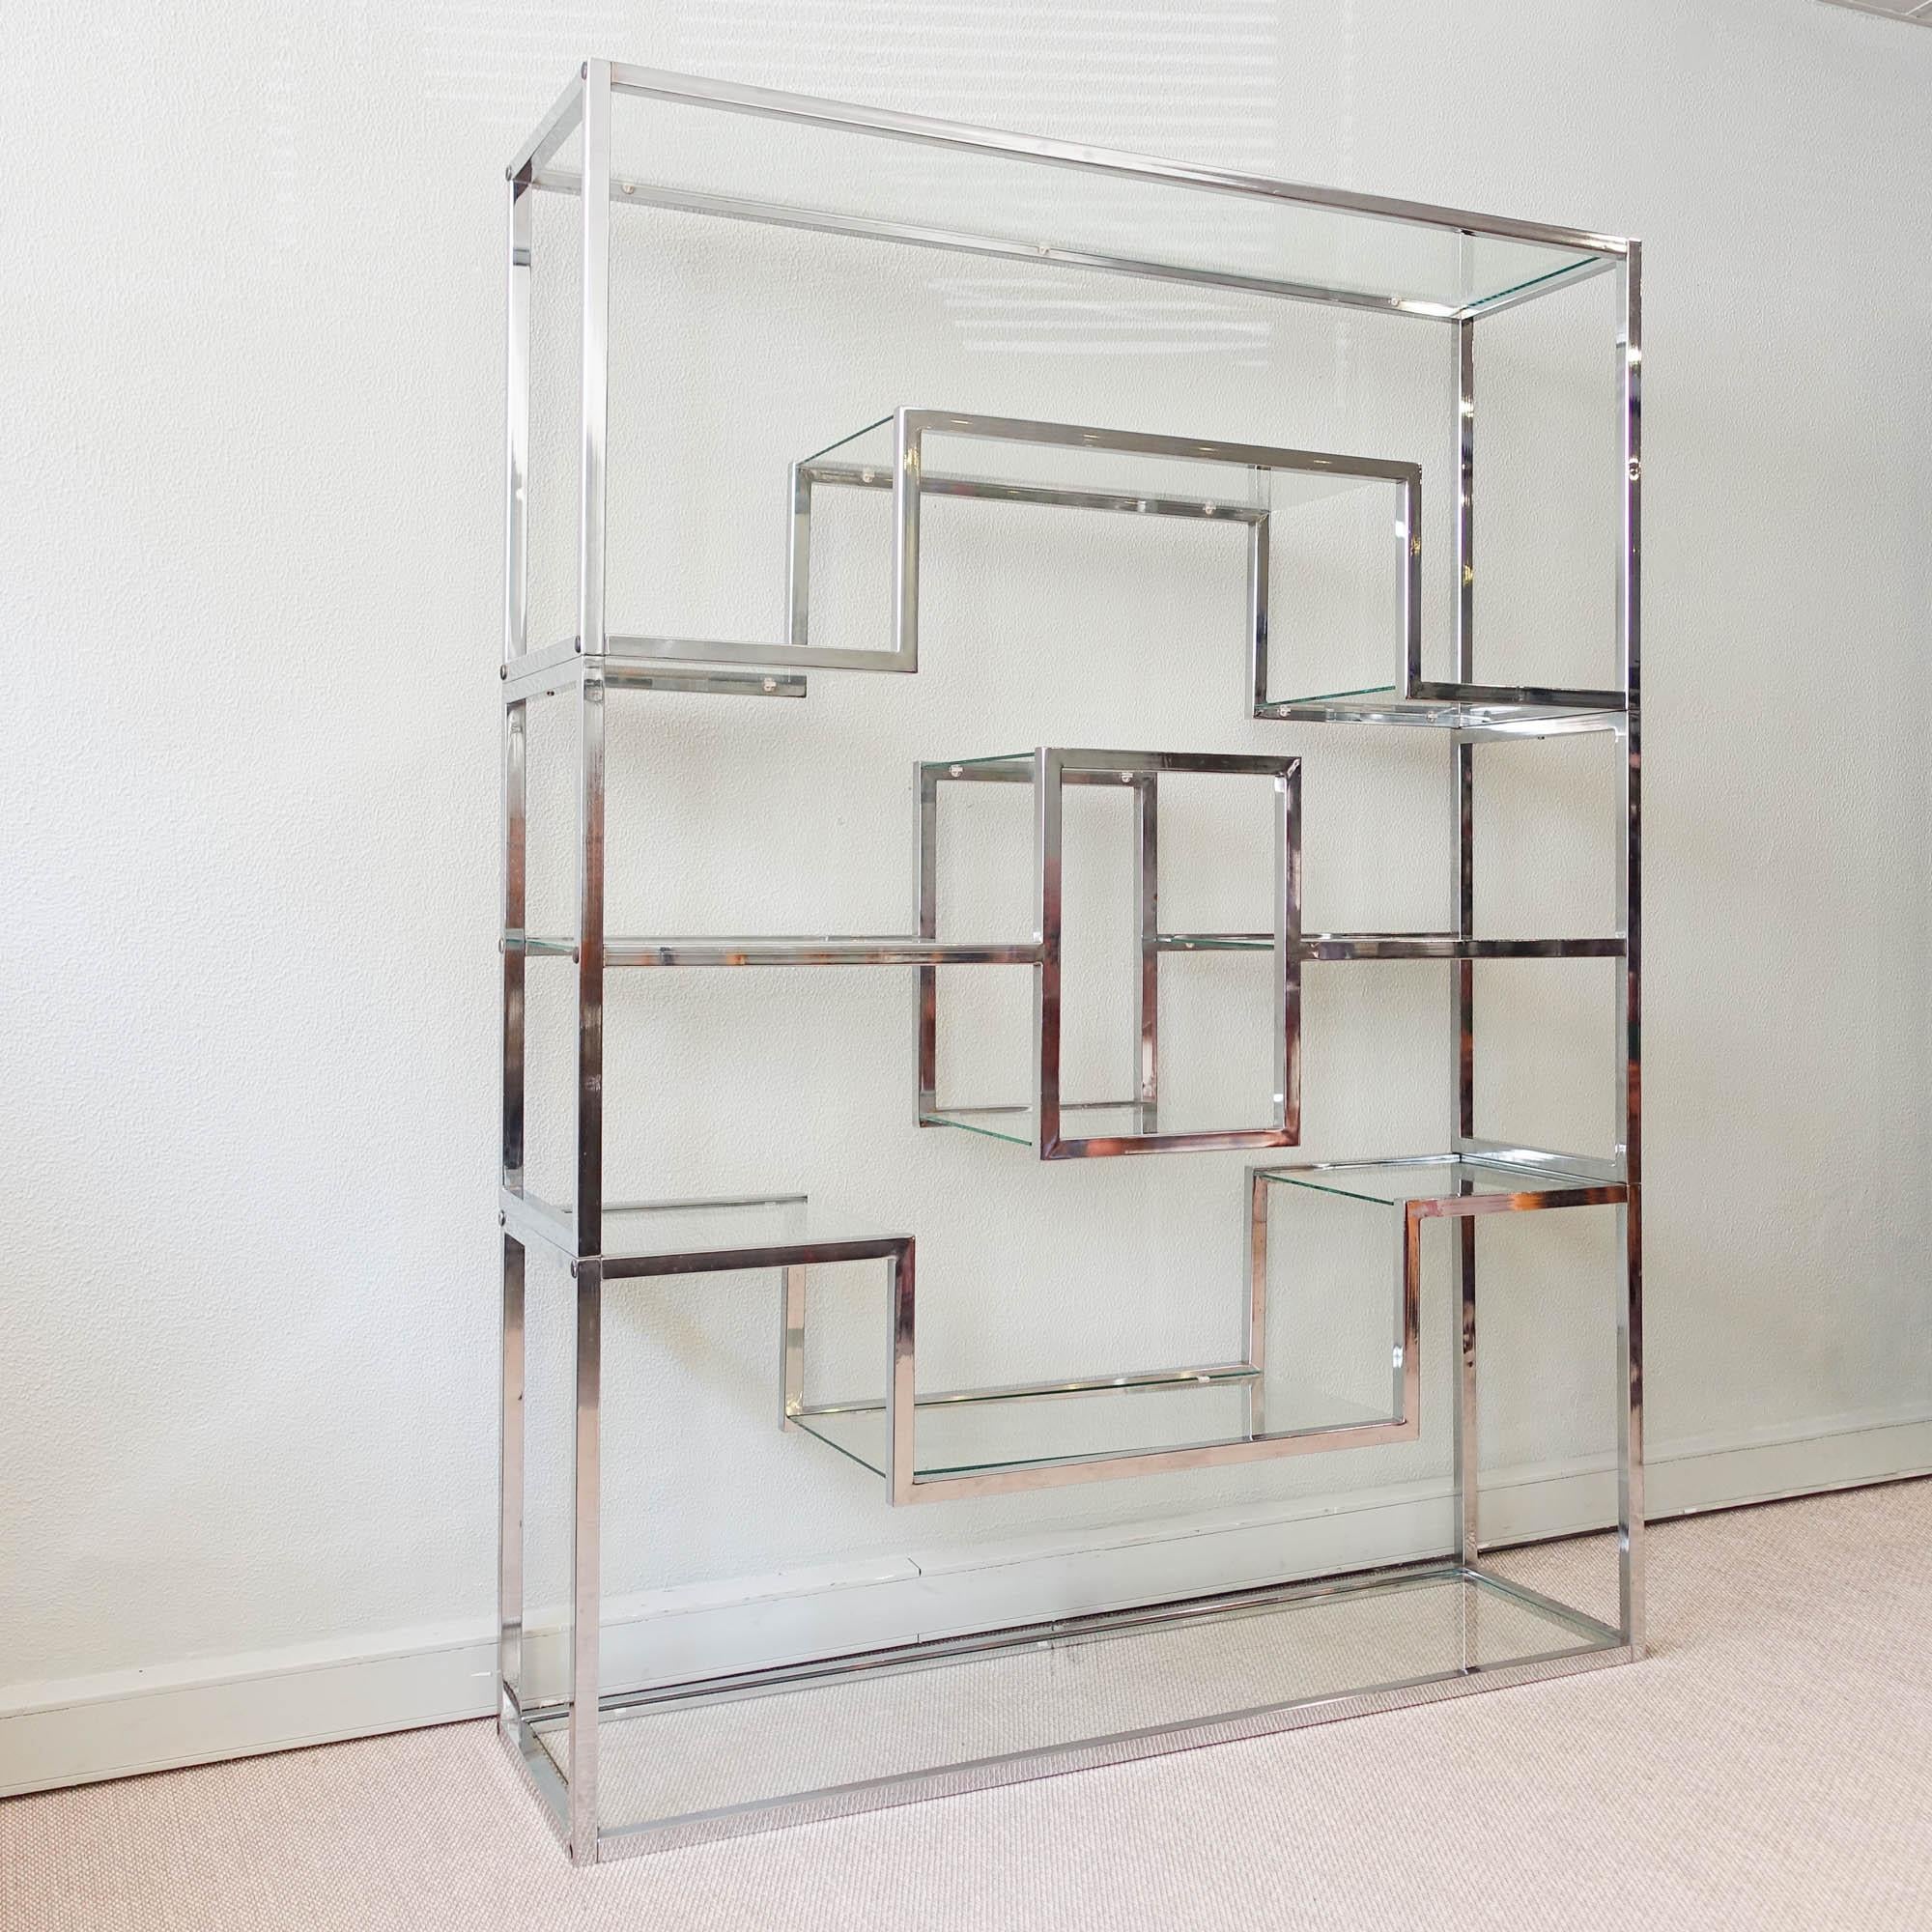 Cette étagère a été conçue dans le style de Romeo Rega, en Italie, dans les années 1970. Chacune des cinq étagères supporte une plaque de verre transparent qui est maintenue en place par de petits supports en plastique. Son design épuré et